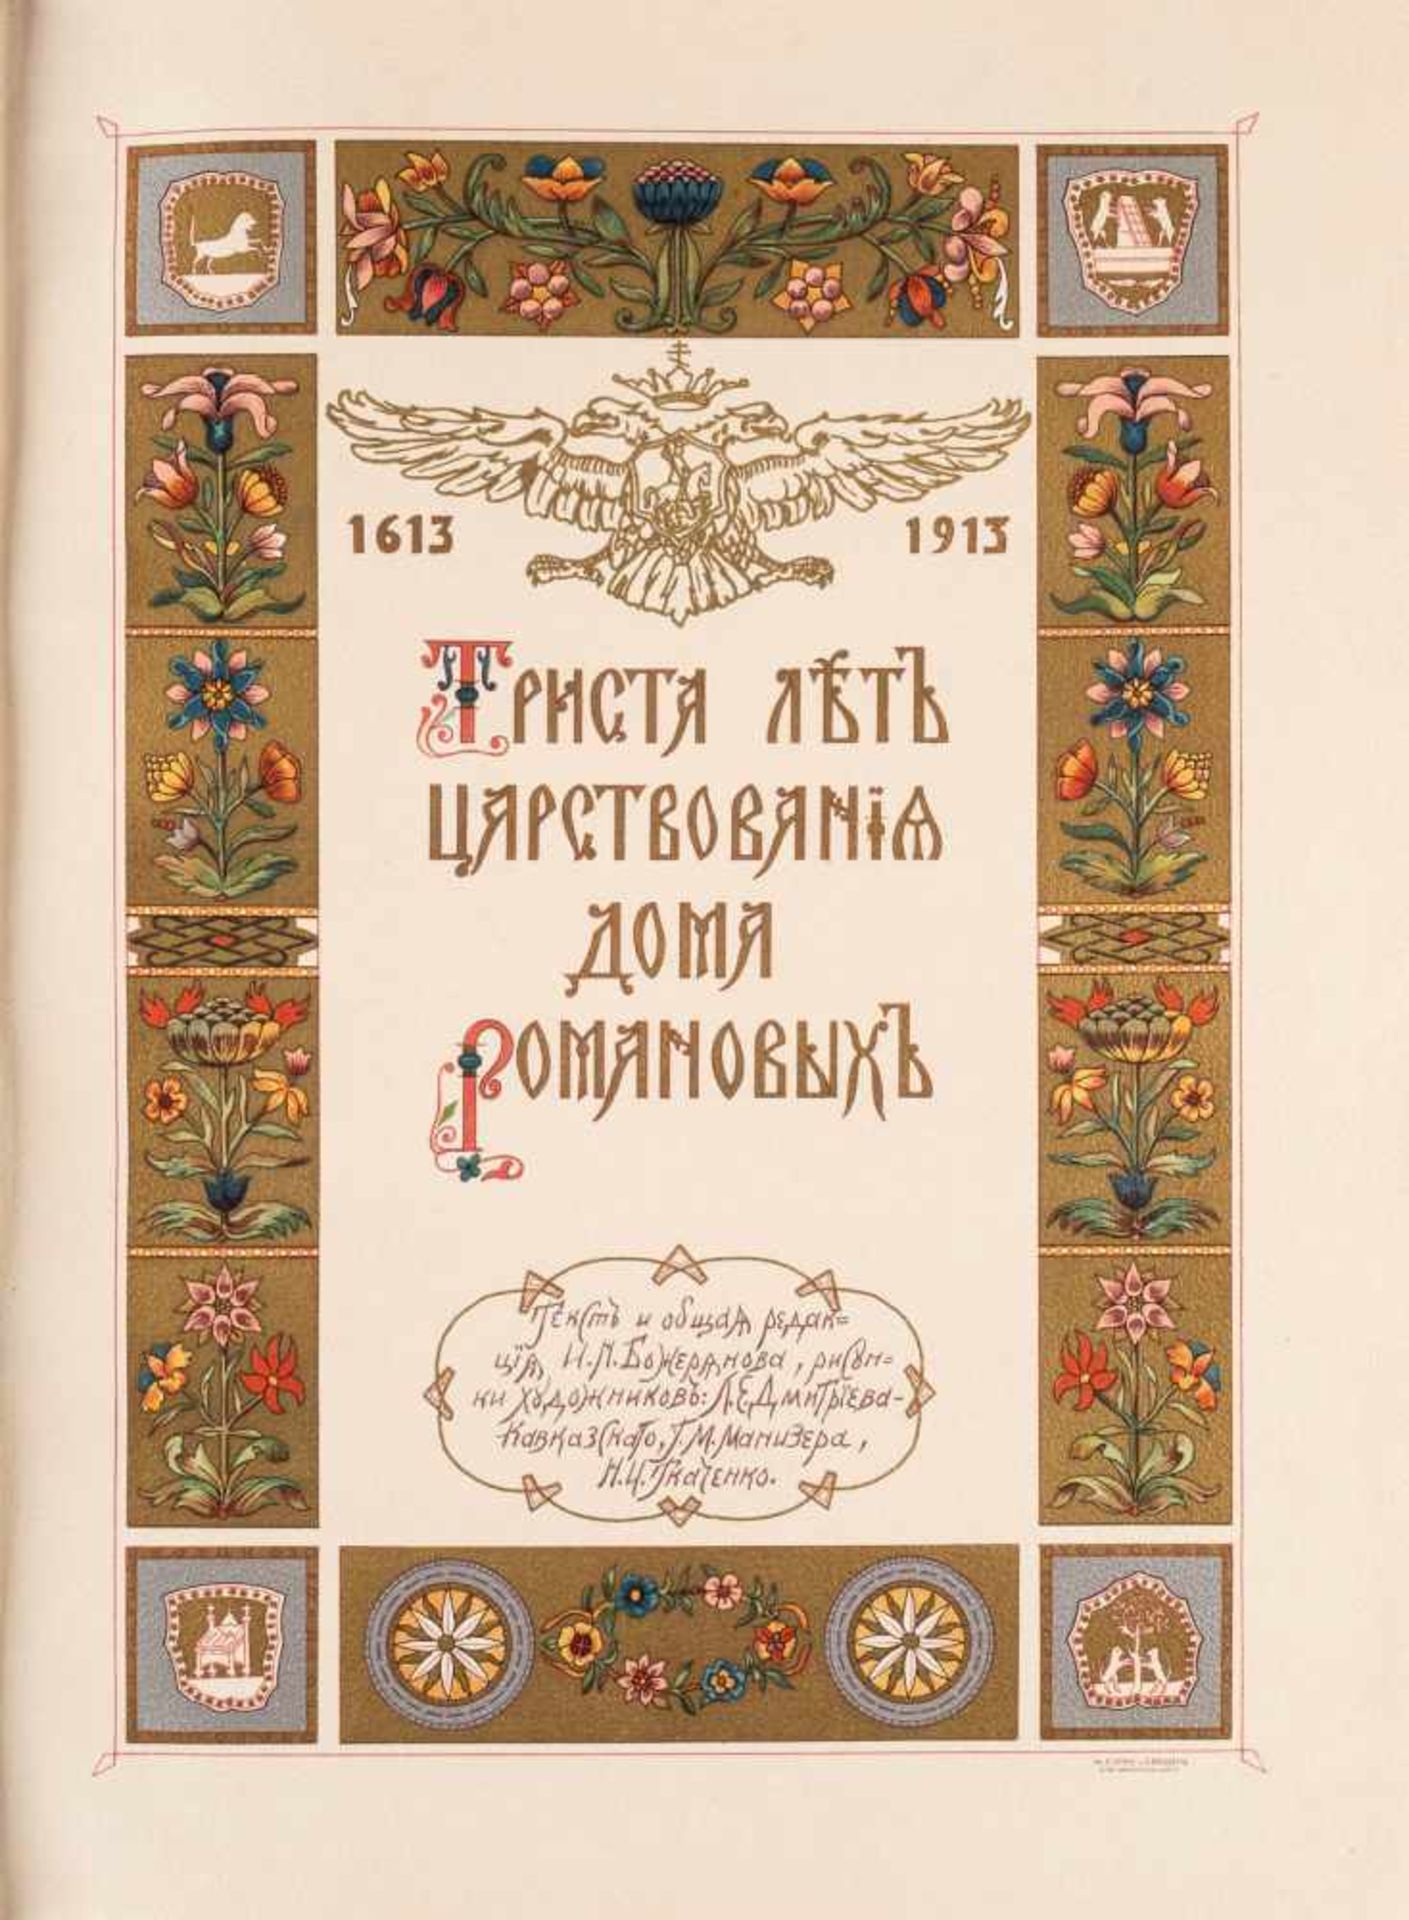 'DREI HUNDERT JAHRE DER REGENTSCHAFT DES HAUSES ROMANOW 1613-1913' Russland, St. Petersburg, - Bild 3 aus 5